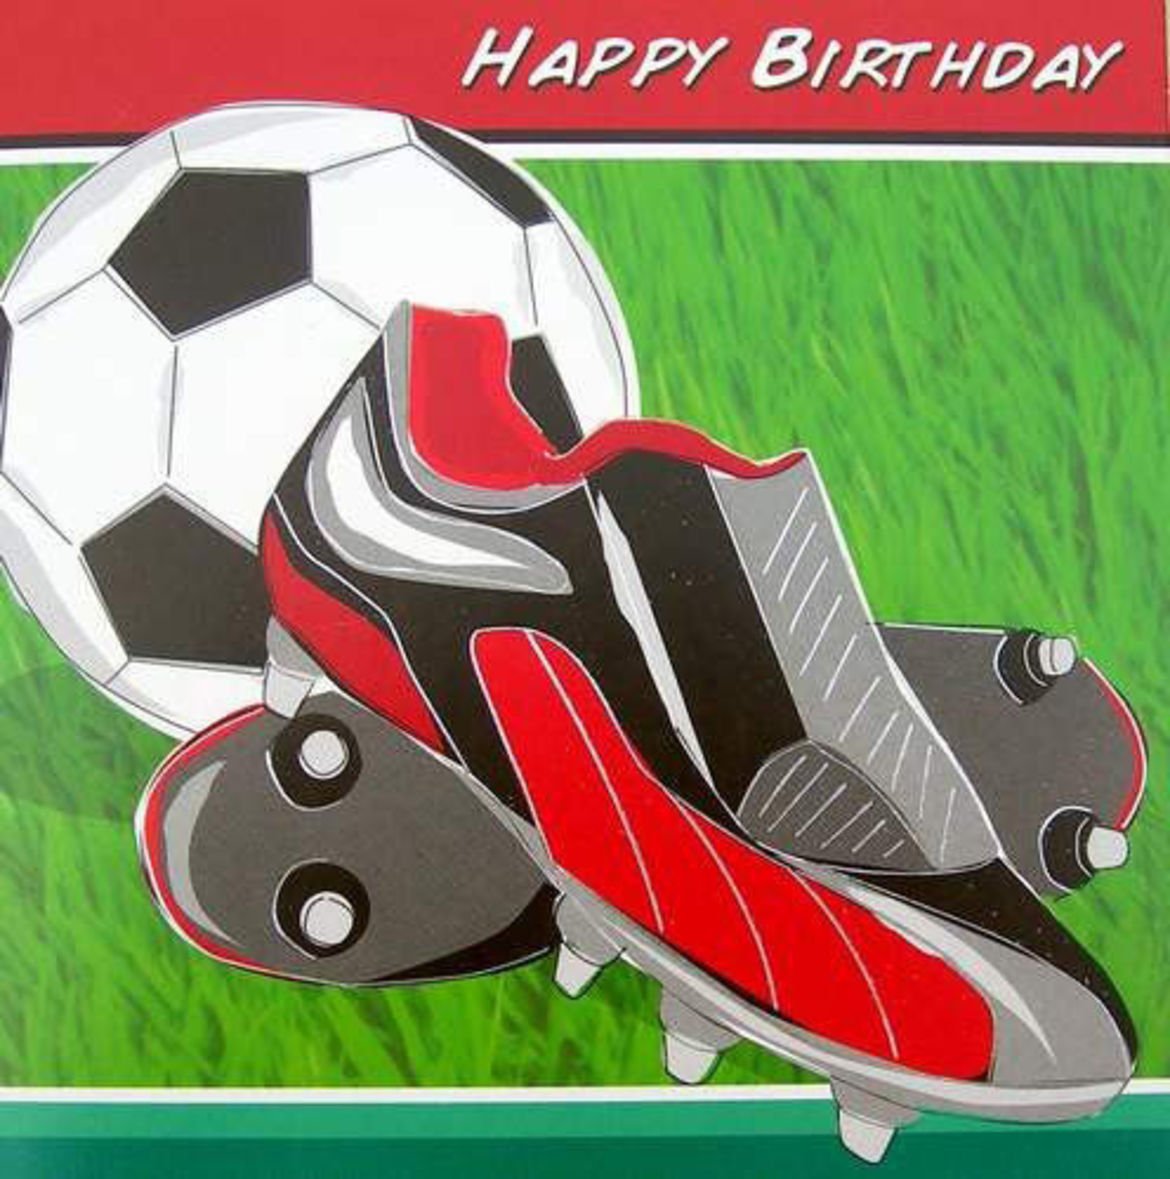 День рождения картинки футбол. С днём рождения футболисту. Футбольные открытки с днем рождения. Открытка футболисту. Футбольное поздравление с днем рождения.